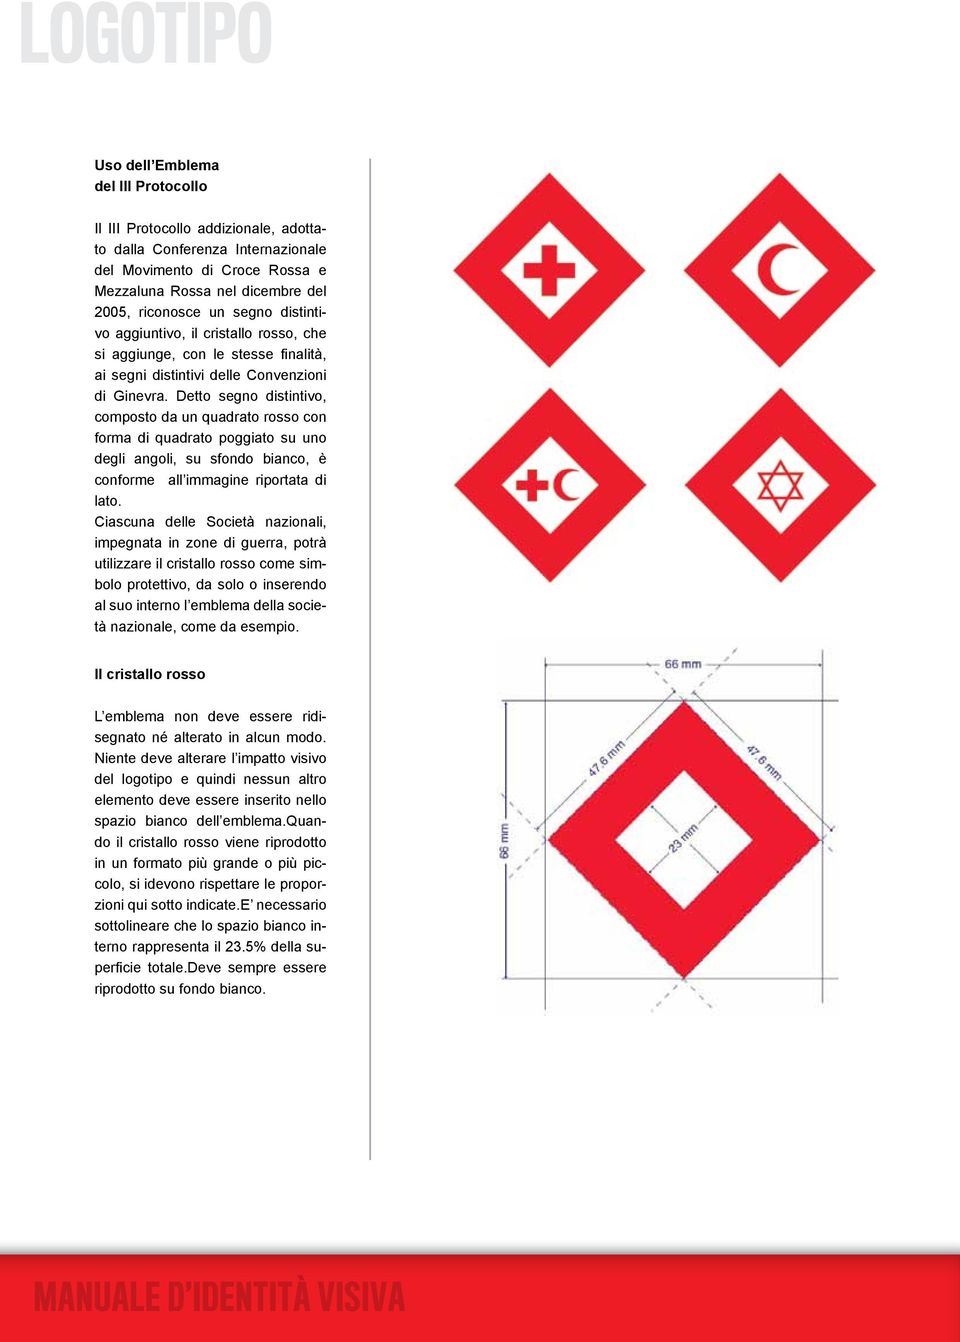 Detto segno distintivo, composto da un quadrato rosso con forma di quadrato poggiato su uno degli angoli, su sfondo bianco, è conforme all immagine riportata di lato.